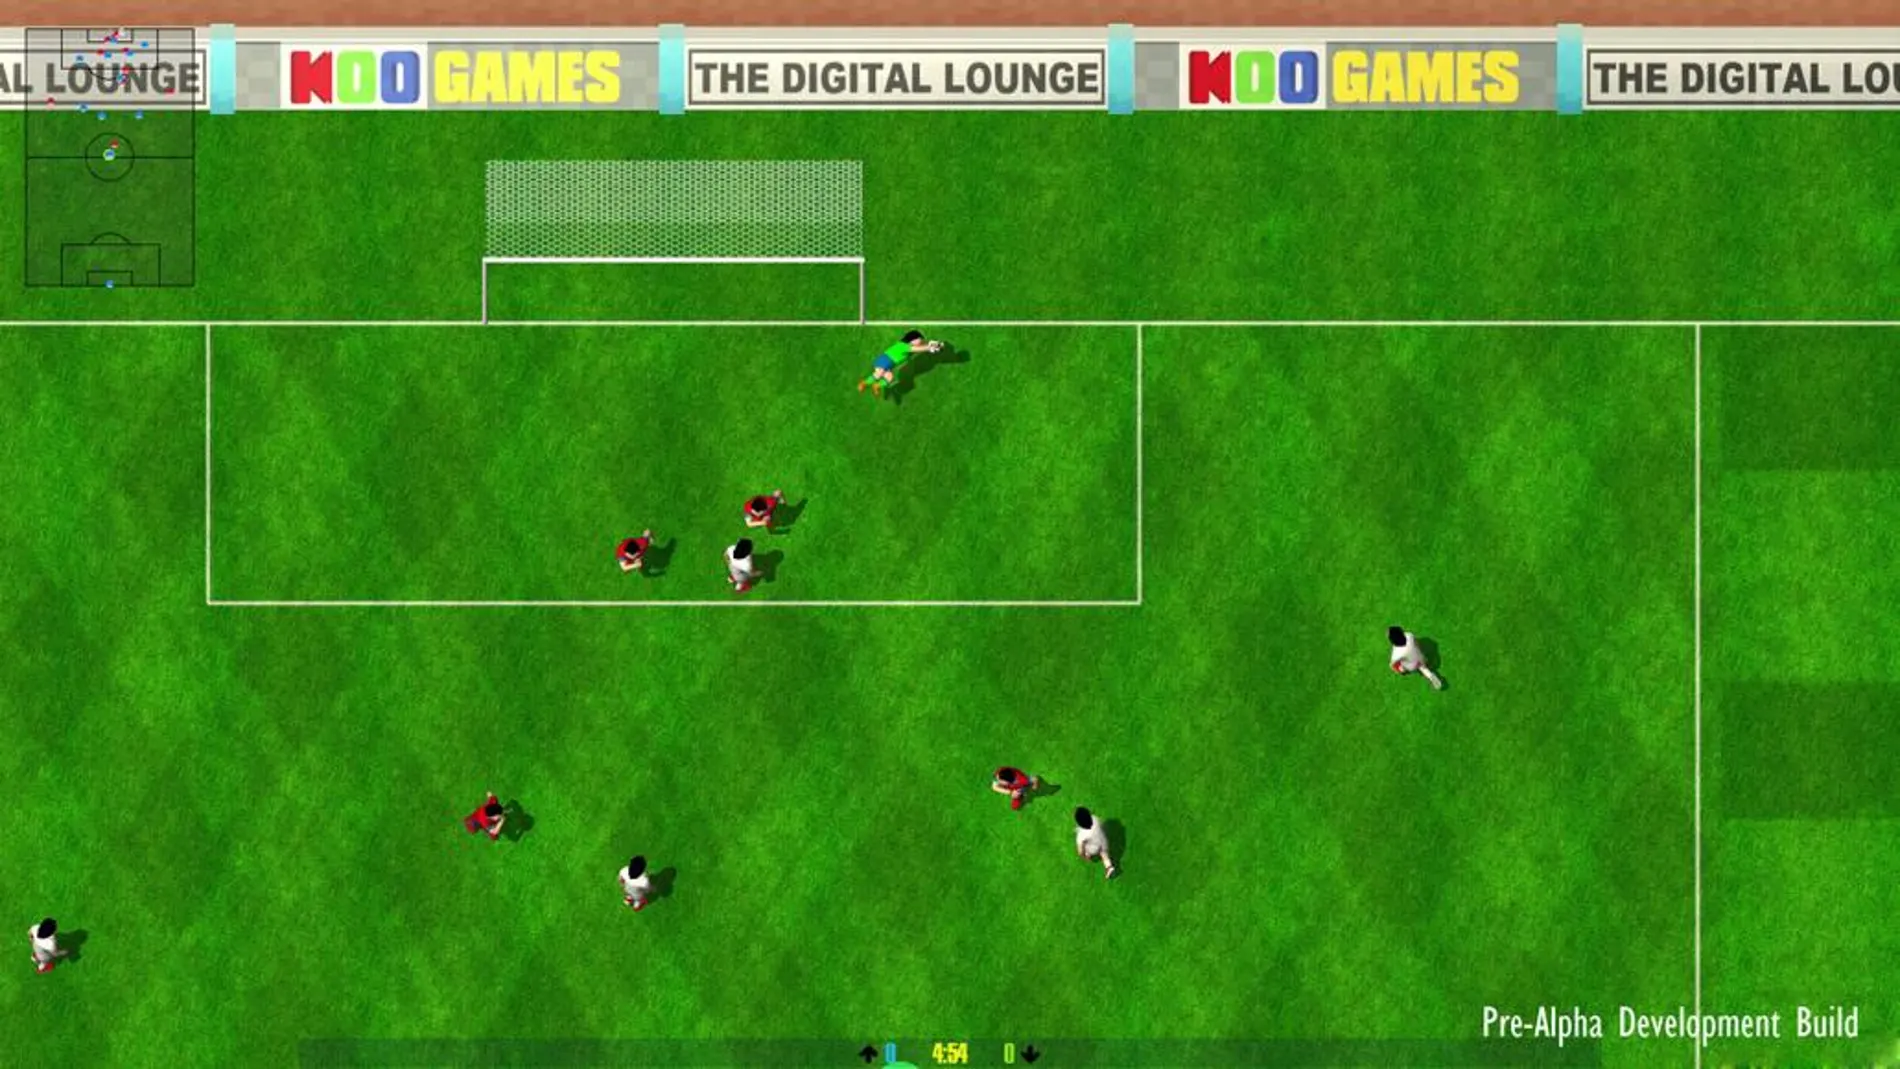 ¡Vuelve Kick Off! El clásico juego de fútbol regresa con una entrega para PS4